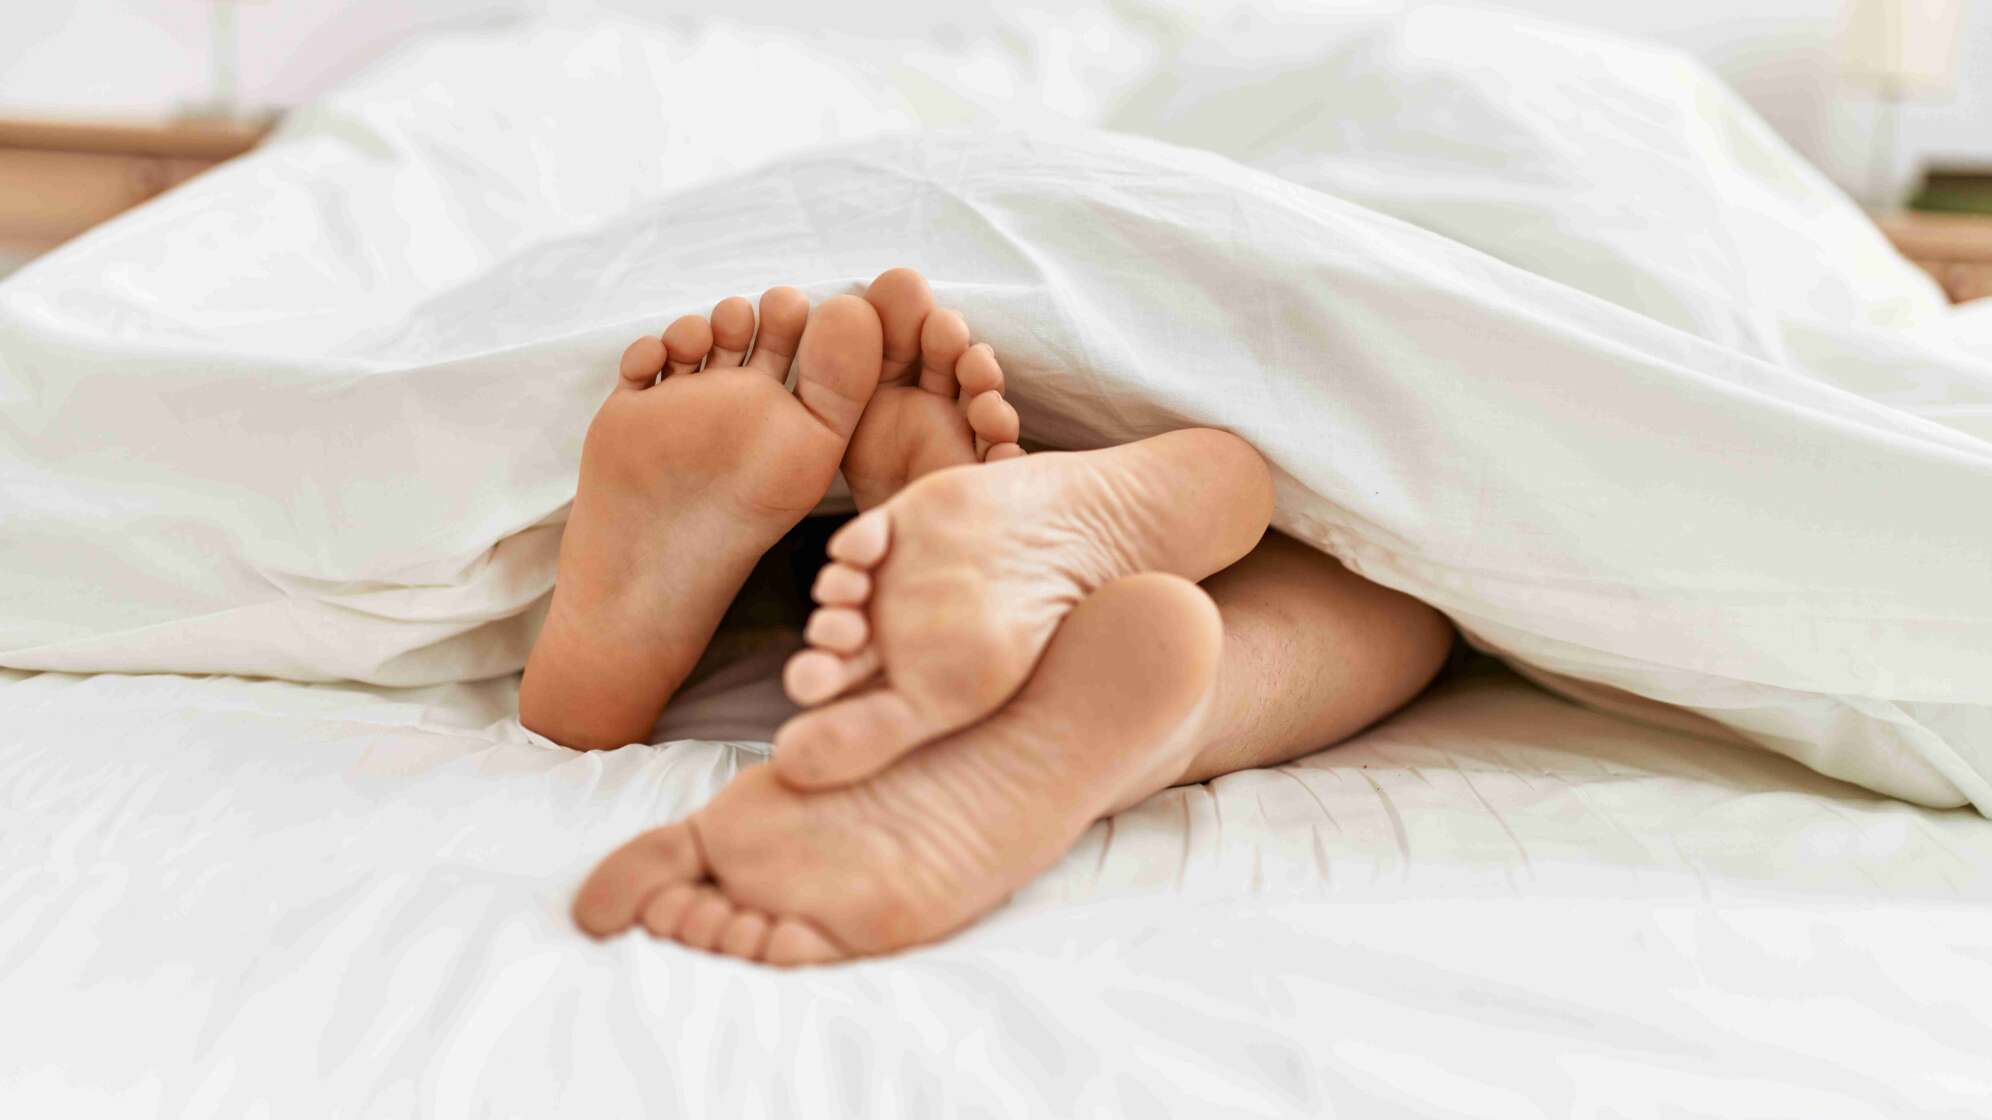 Füße unter Bettdecke